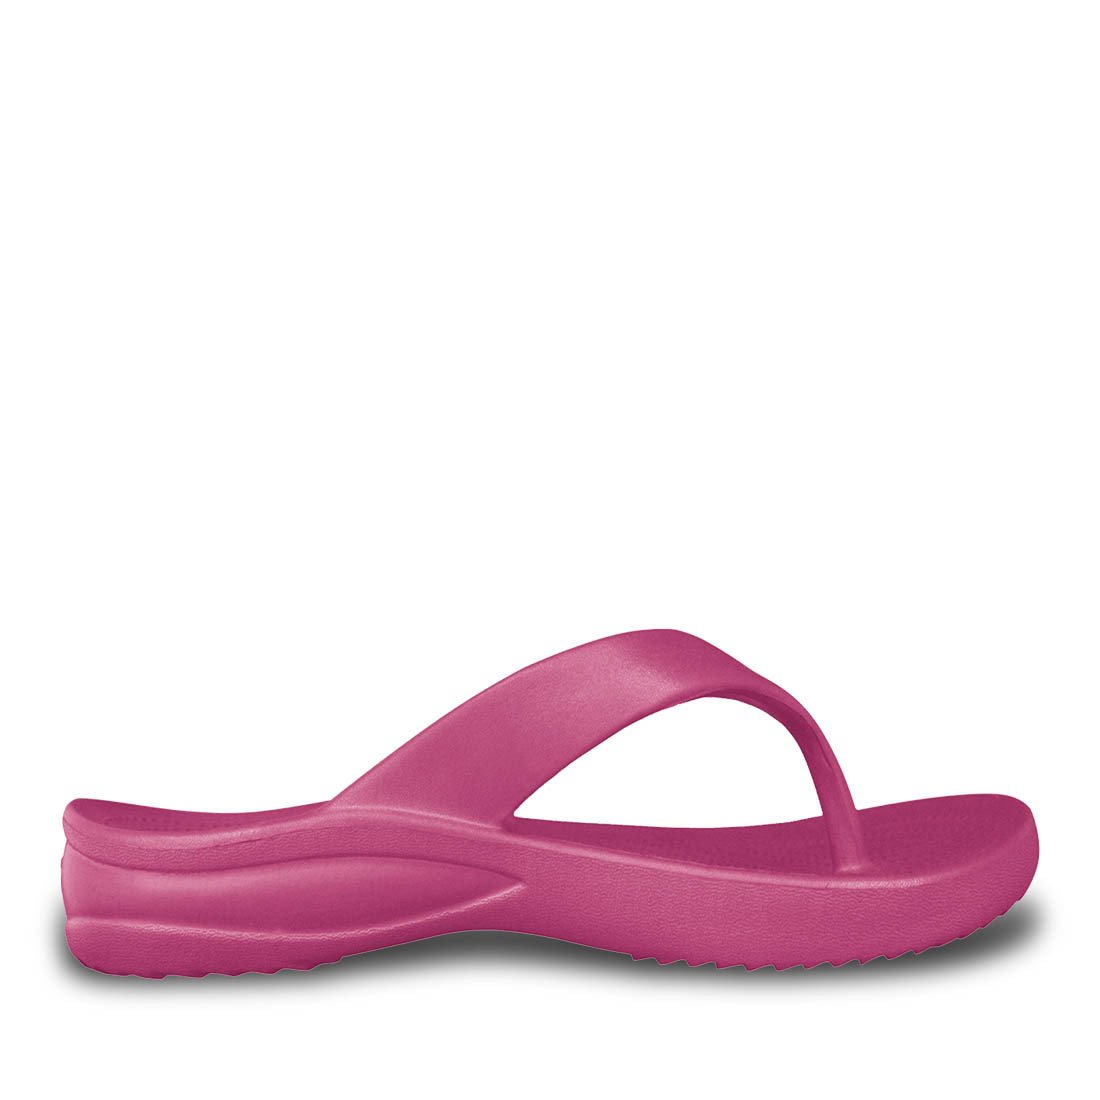 Women's Flip Flops by DAWGS USA